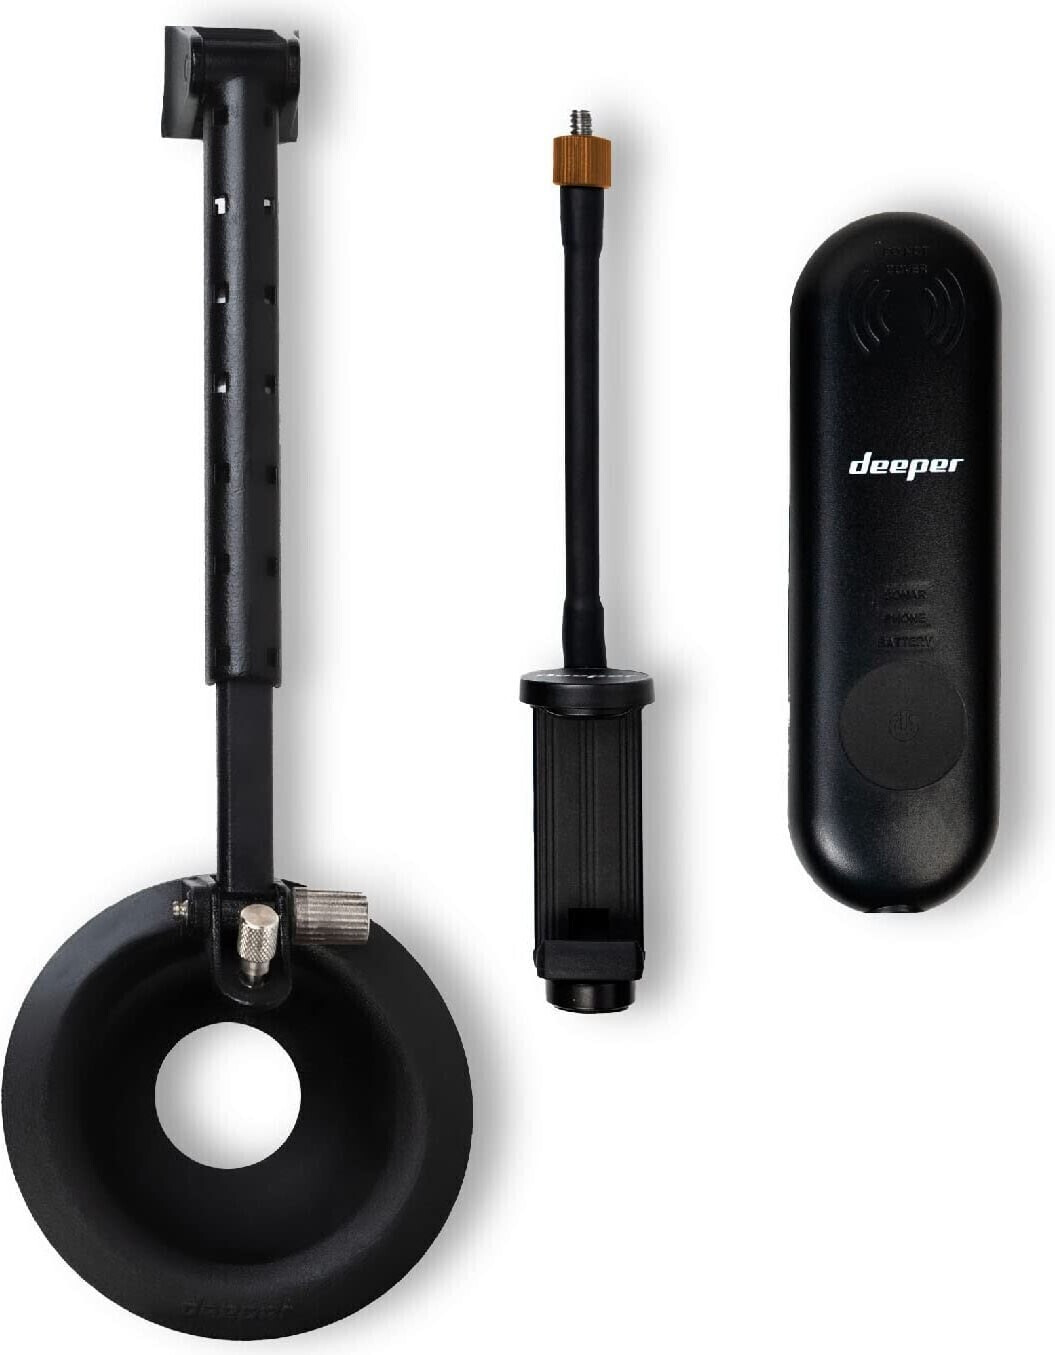 Buy Deeper Sonar Range Extender Kit from £126.99 (Today) – Best